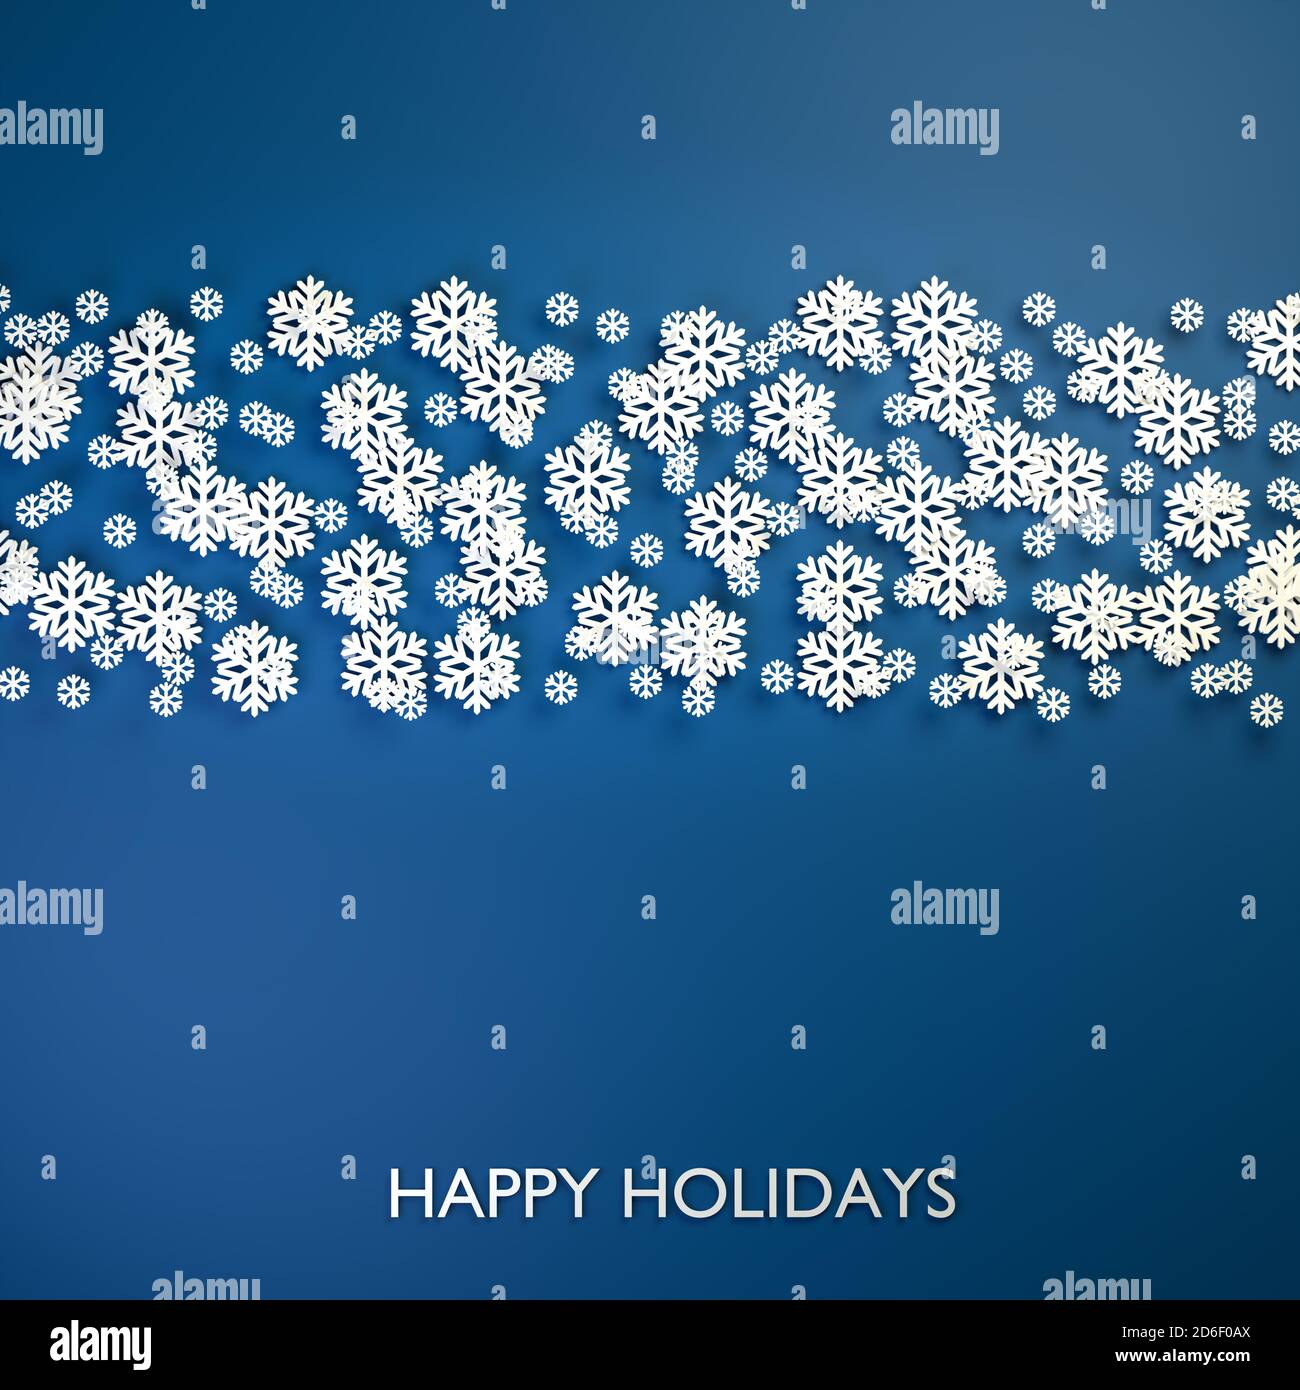 Noël - concept de vacances heureux. Motif flocons de neige blancs sur fond bleu classique. Texte « Happy Holidays » en bas Banque D'Images